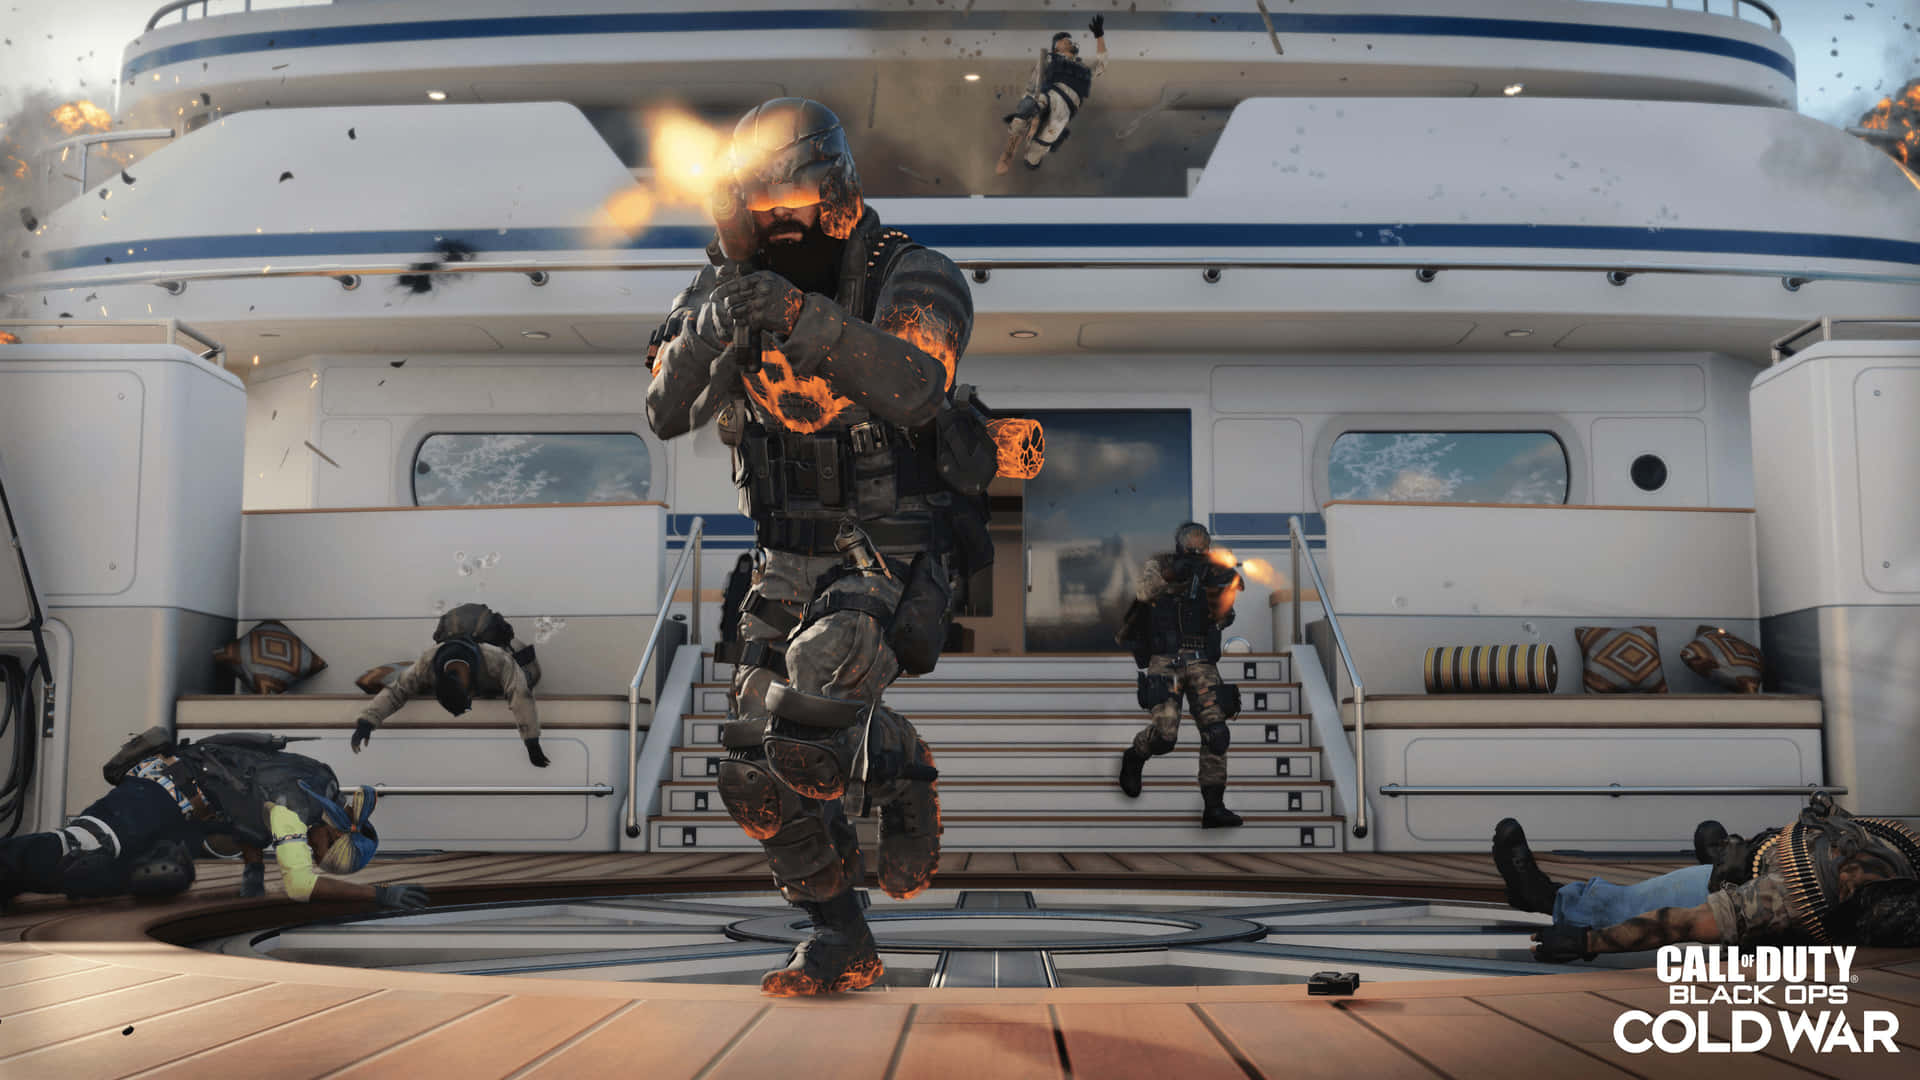 Affrontala Guerra Fredda In 4k Con Call Of Duty: Black Ops Cold War